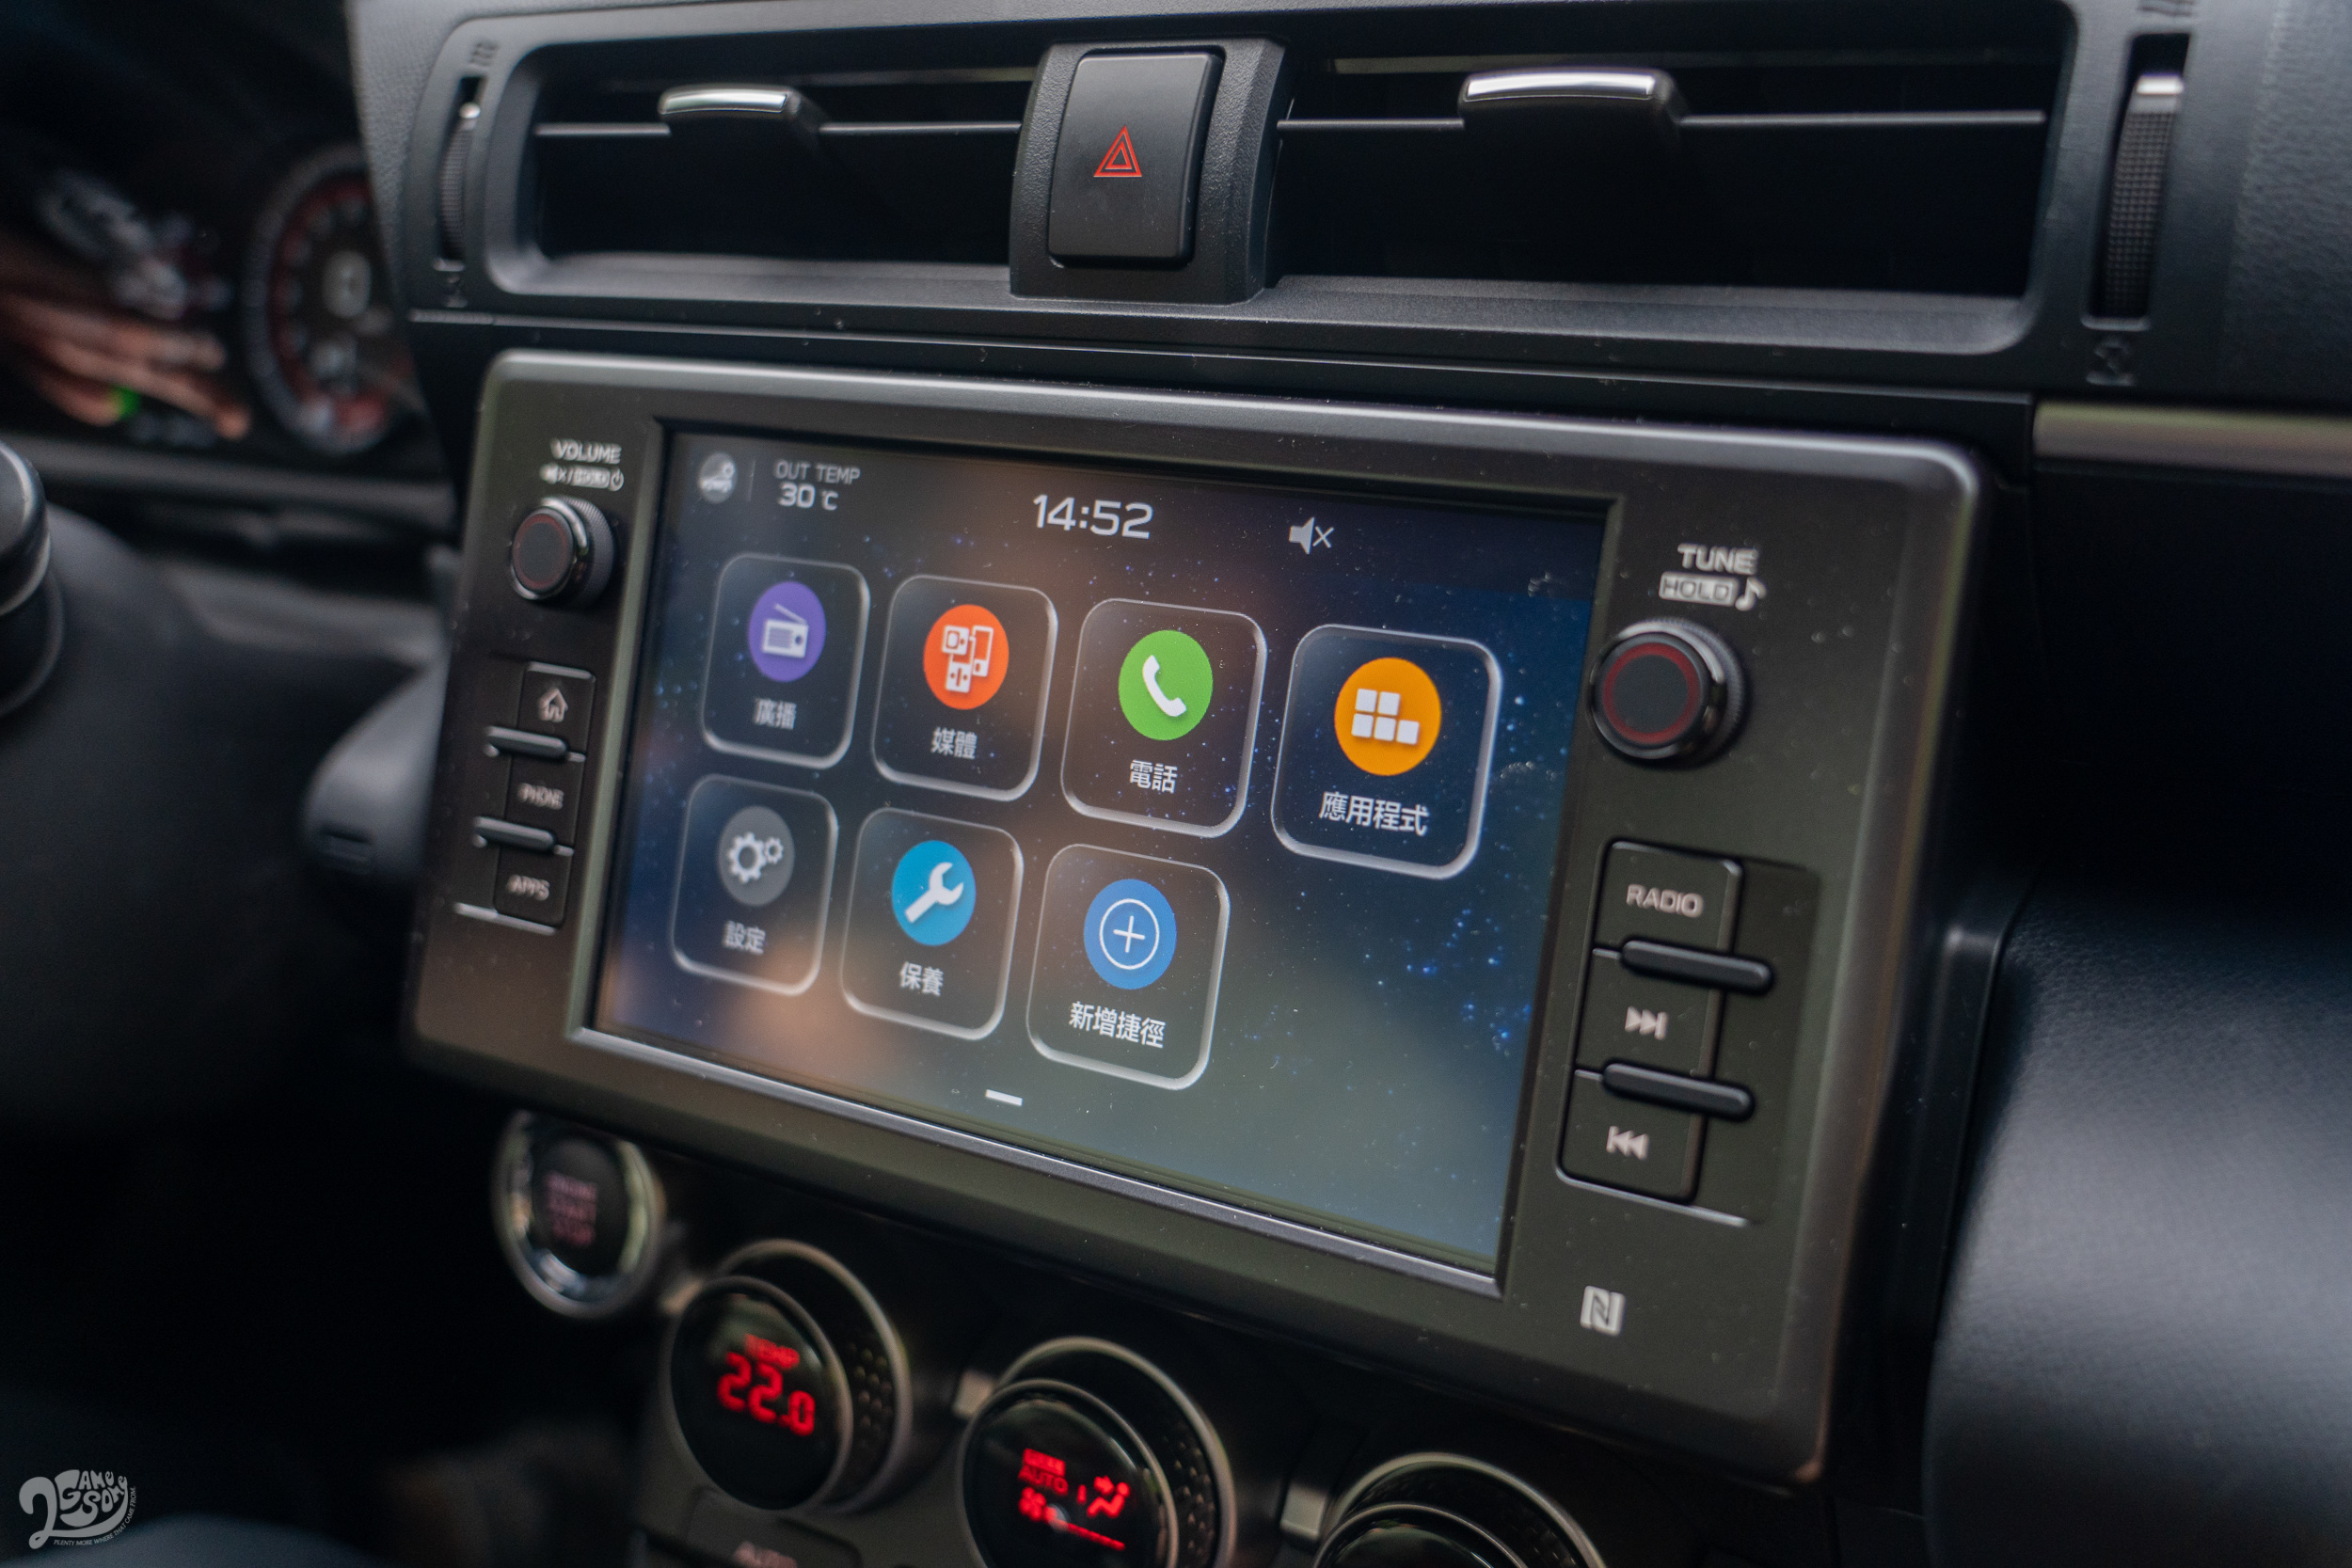 7 吋 LCD 配置供應 Apple CarPlay / Android Auto 等智慧型裝置互聯功能。